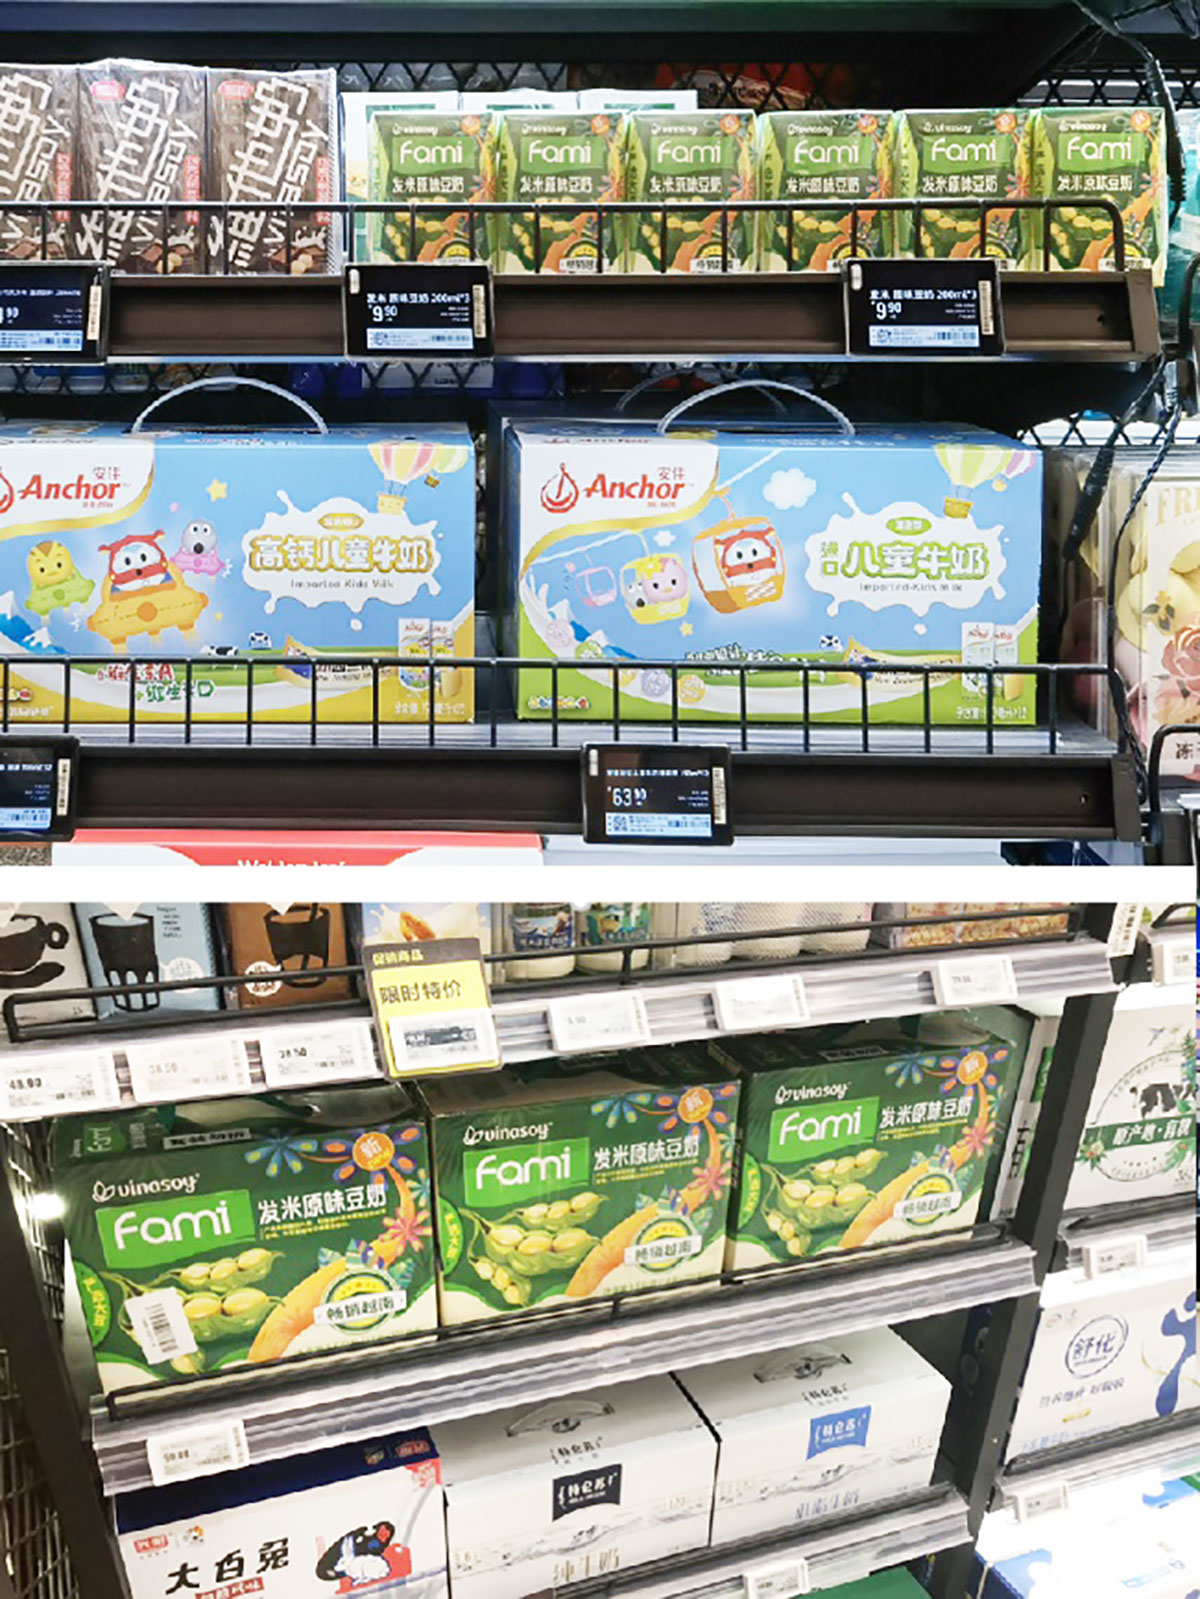 Sữa đậu nành Fami trên kệ siêu thị Hema. Chuỗi siêu thị Hema hiện có hơn 150 cửa hàng, tập trung ở những thành phố lớn như Bắc Kinh, Thượng Hải…